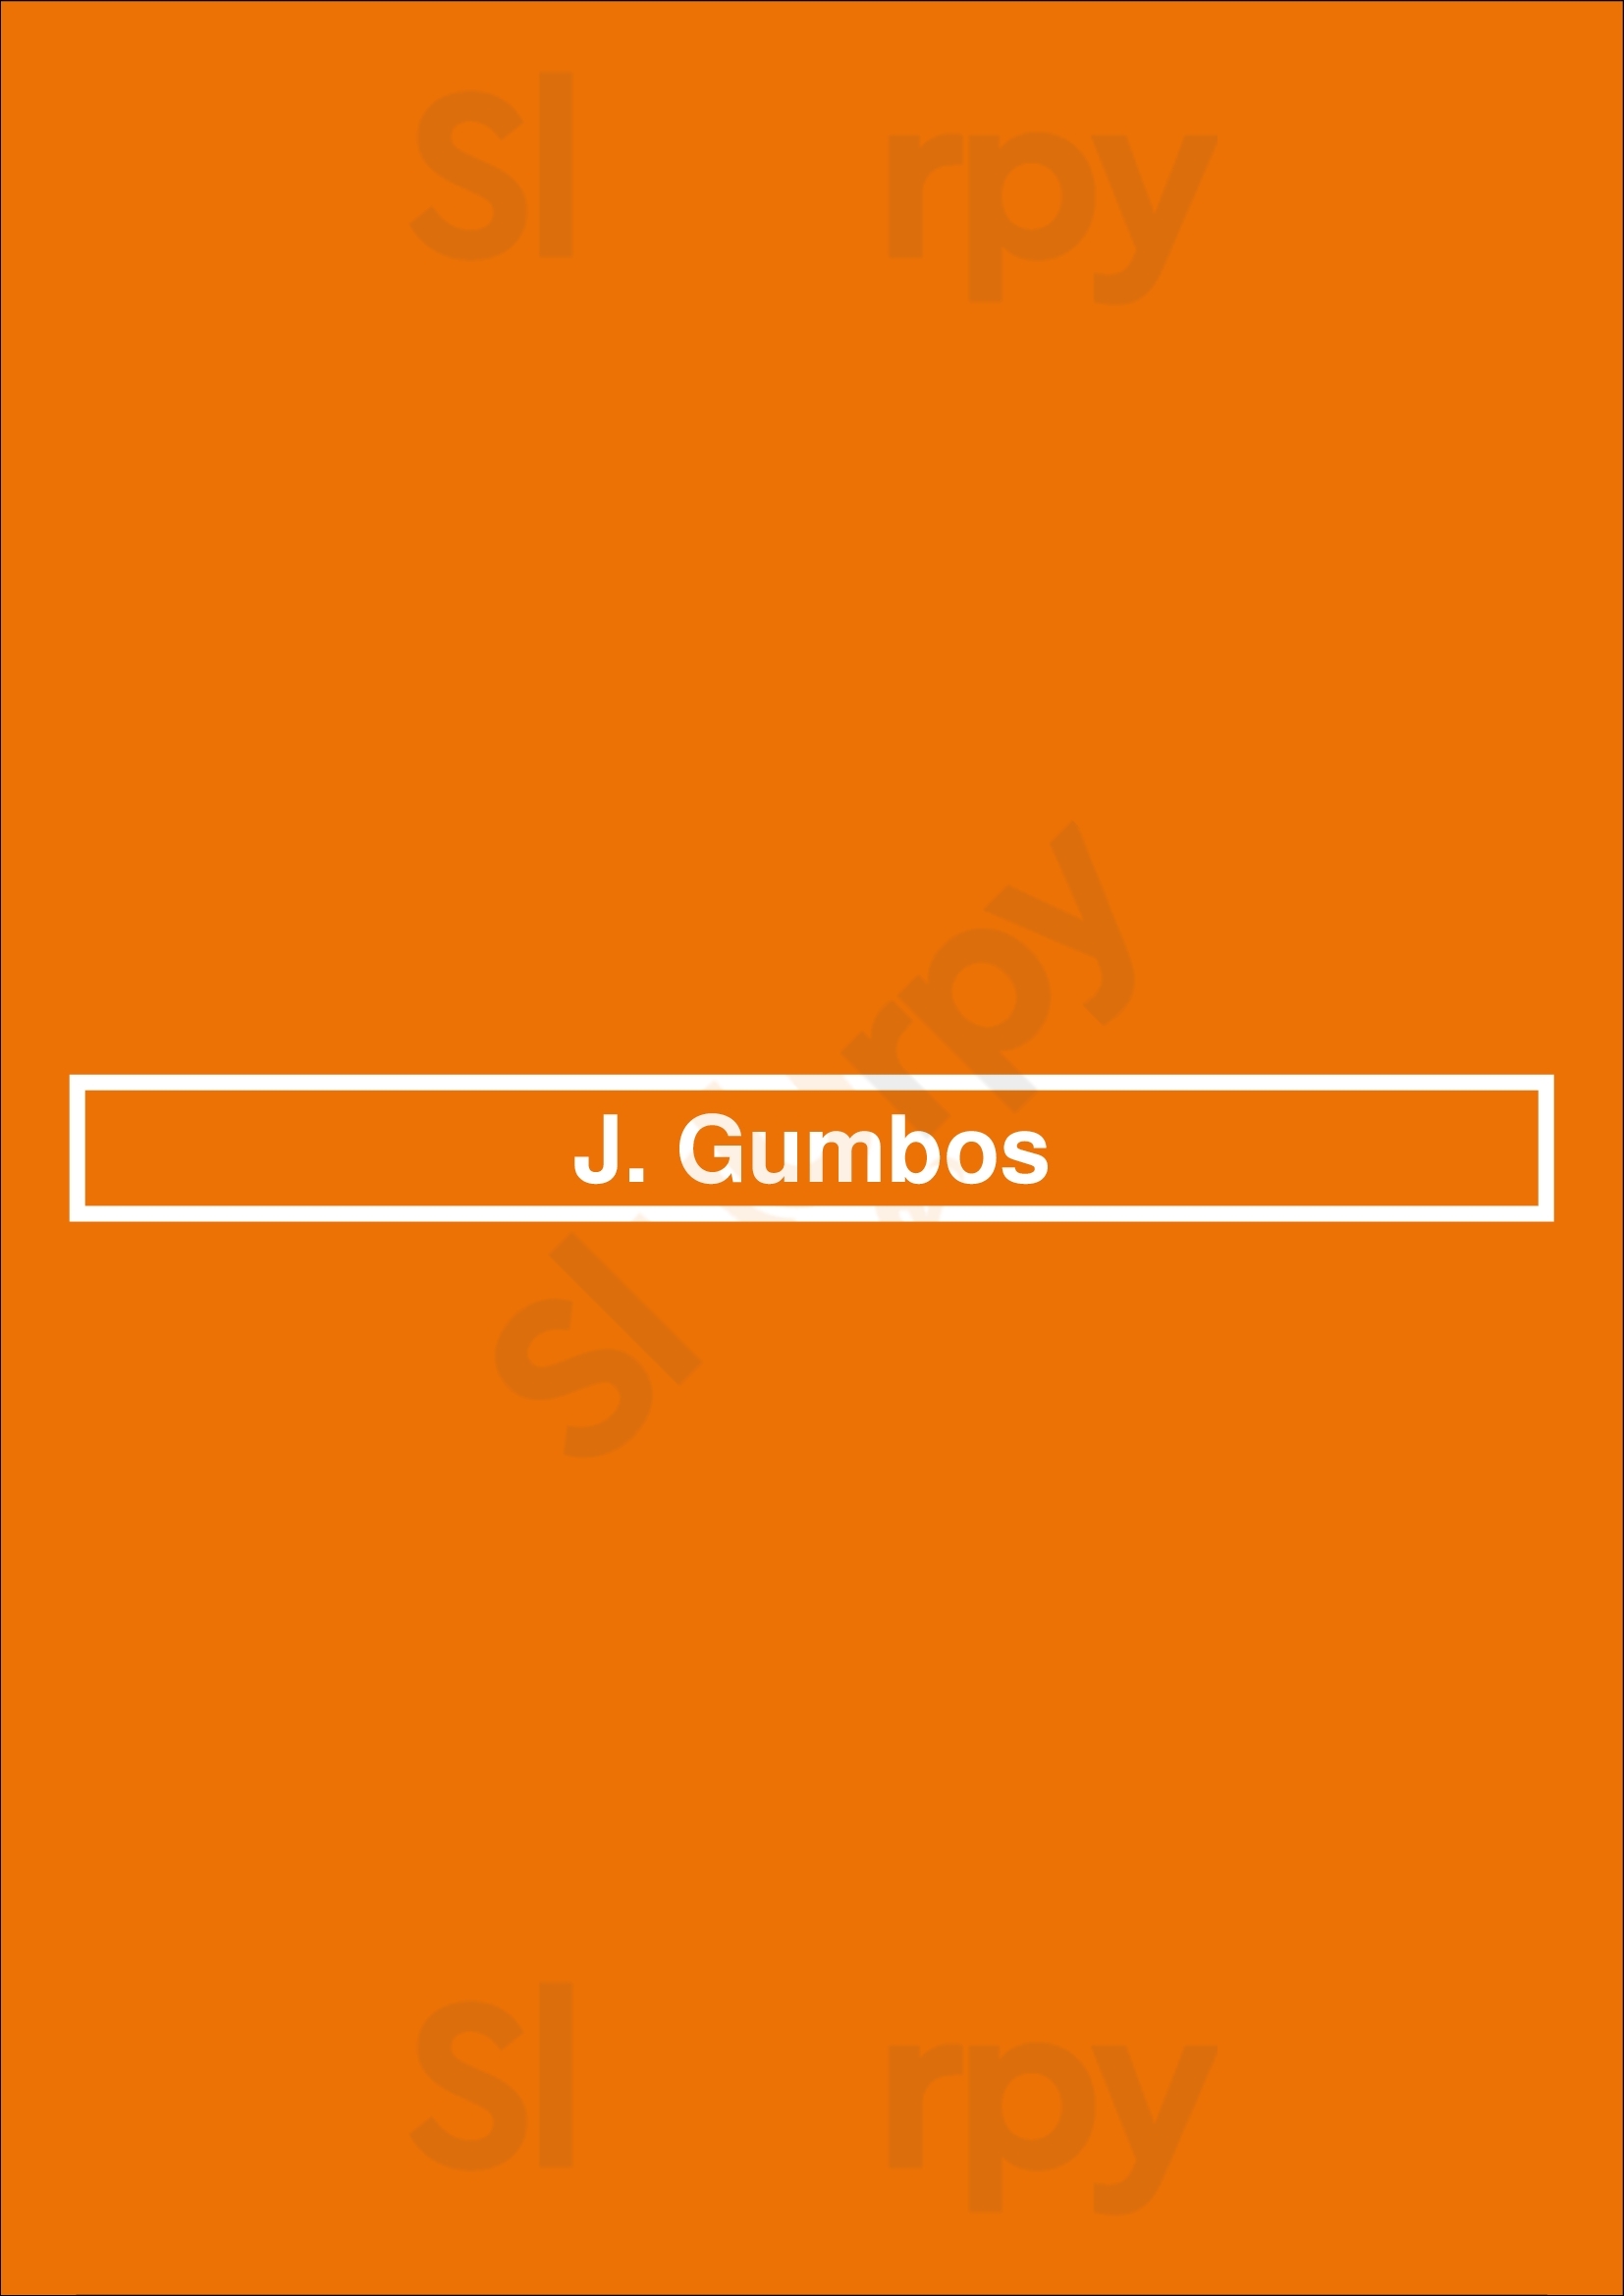 J. Gumbo's Albuquerque Menu - 1